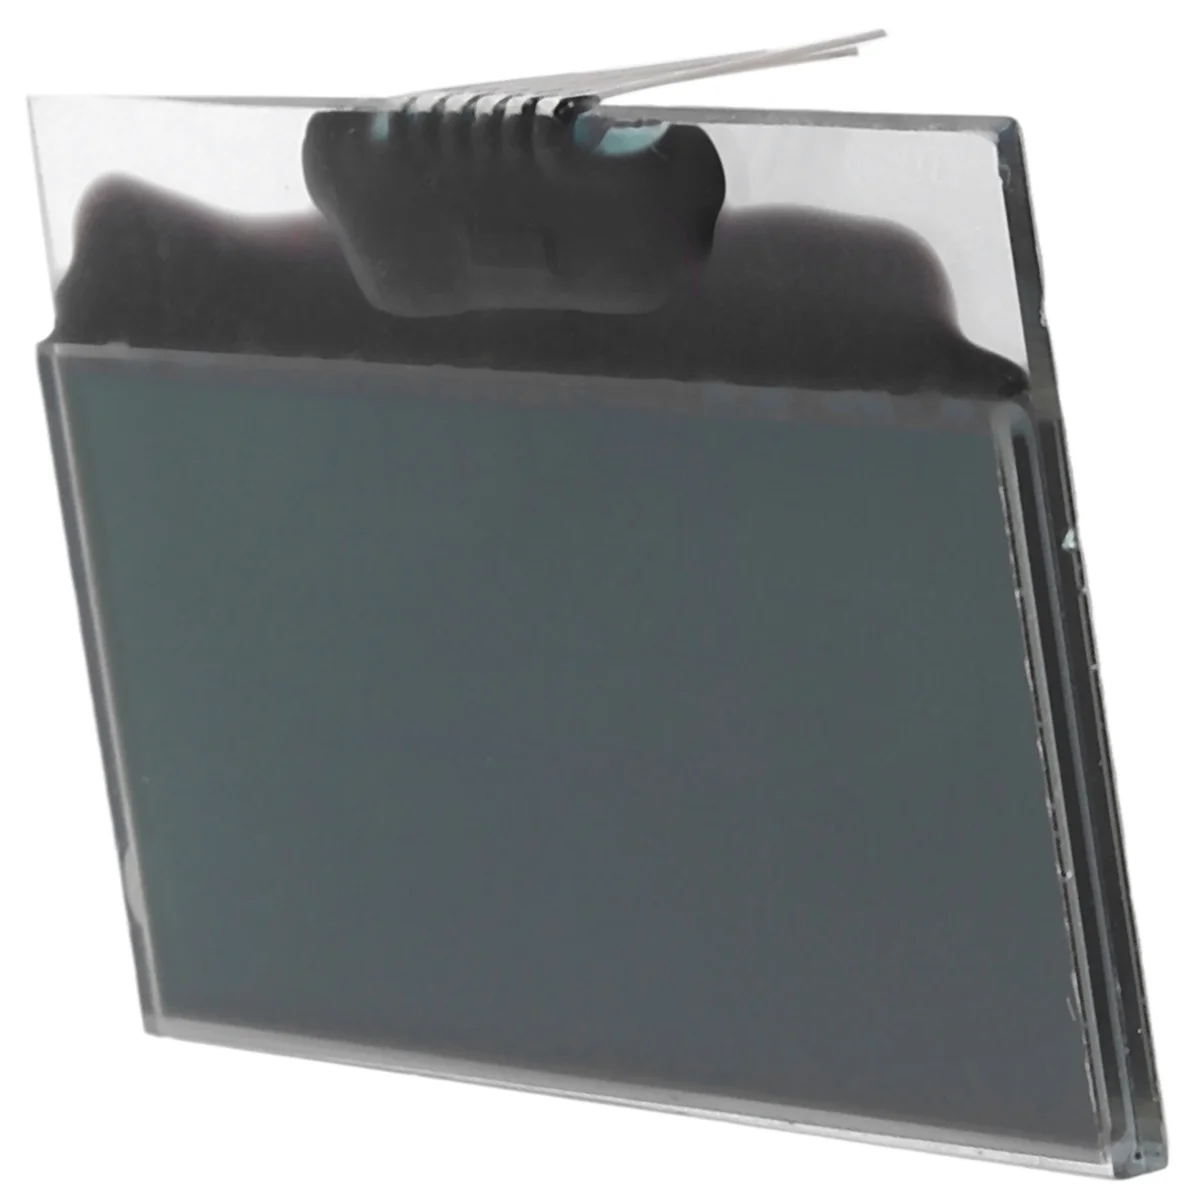 

Автомобильный ЖК-экран, сменный кластер приборной панели для Toyota Yaris (2008-2011) для Vios(2008-2012)